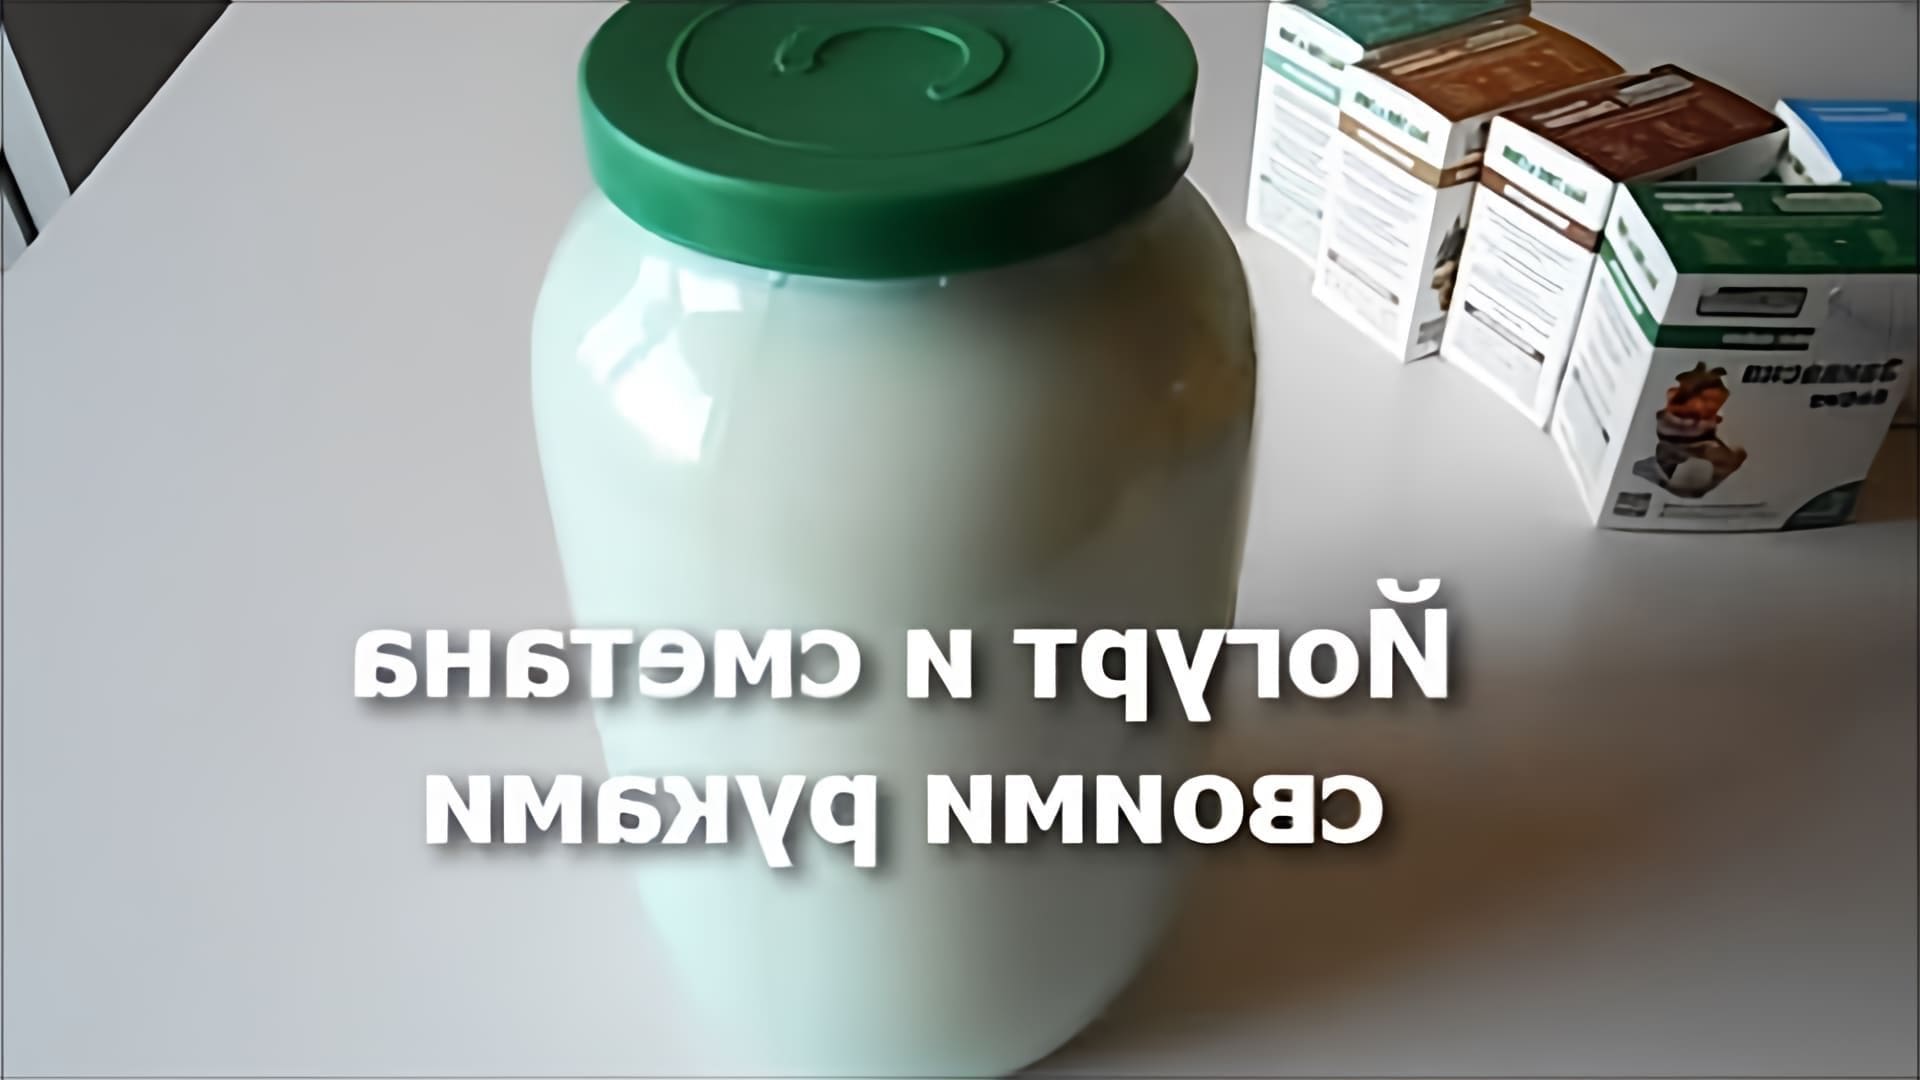 В данном видео демонстрируется процесс приготовления йогурта и сметаны с использованием заквасок от компании Бог Здрав